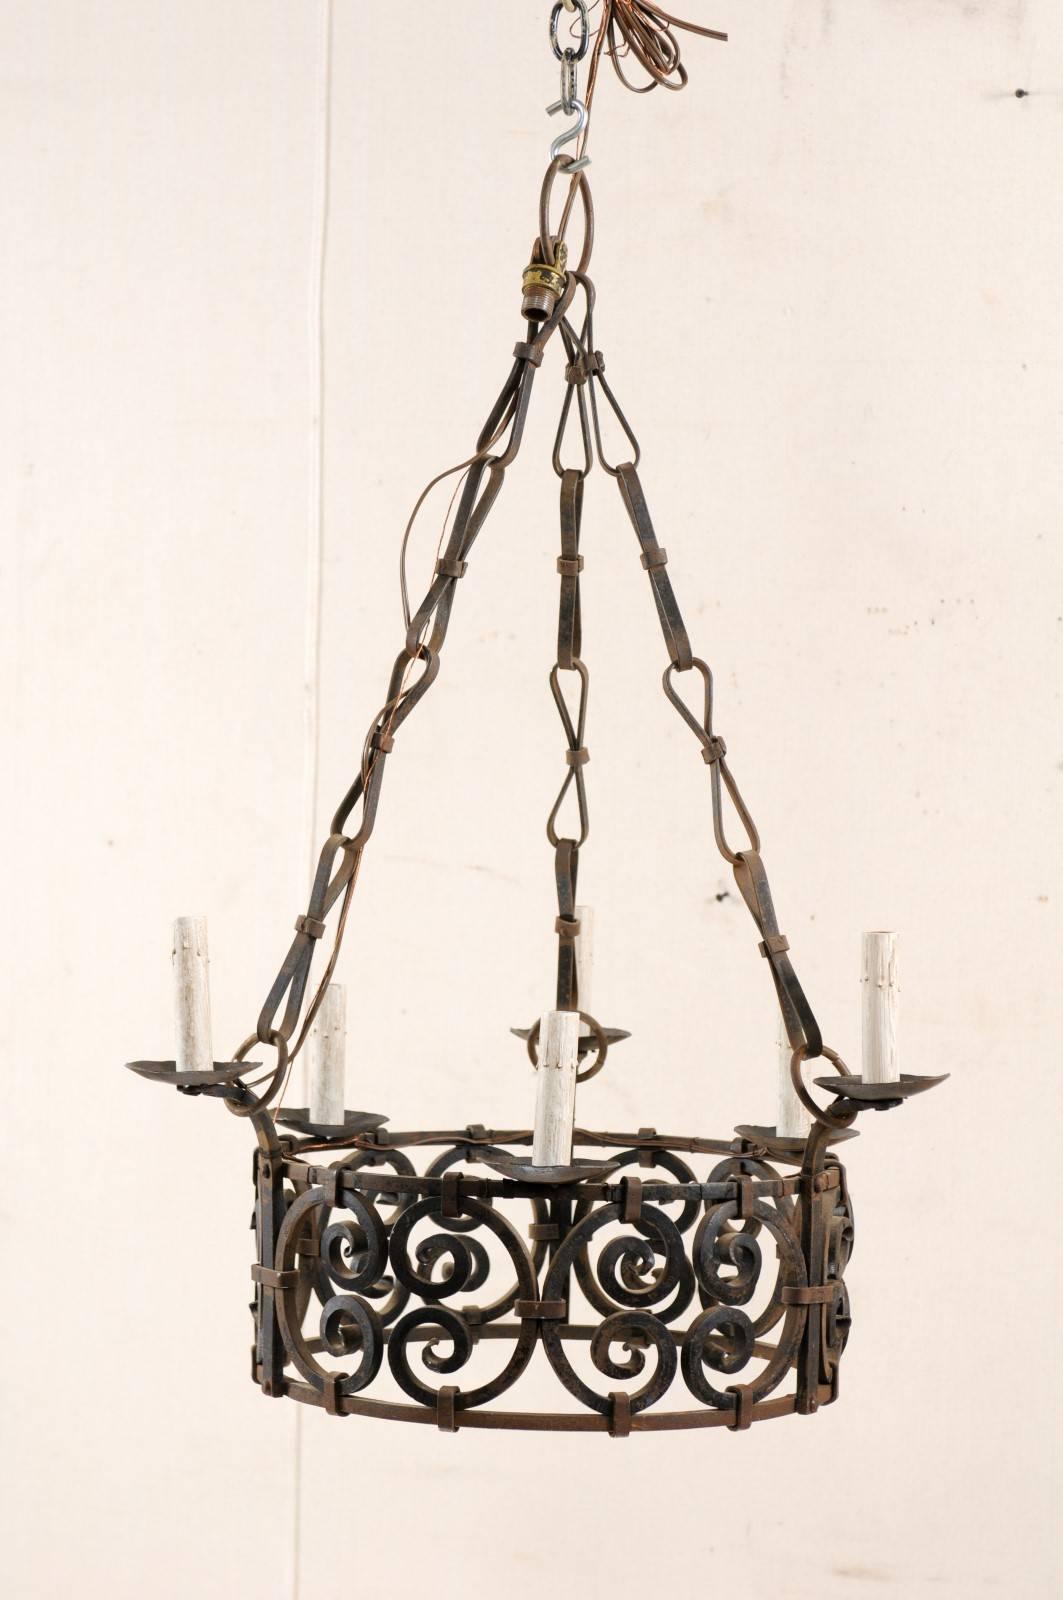 Ein französischer Vintage-Kronleuchter aus Eisen mit sechs Lichtern in einer runden Ringform. Dieser französische Kronleuchter aus der Mitte des 20. Jahrhunderts zeichnet sich durch ein kunstvoll gestaltetes Zentrum aus, das aus C-Rollen-Motiven